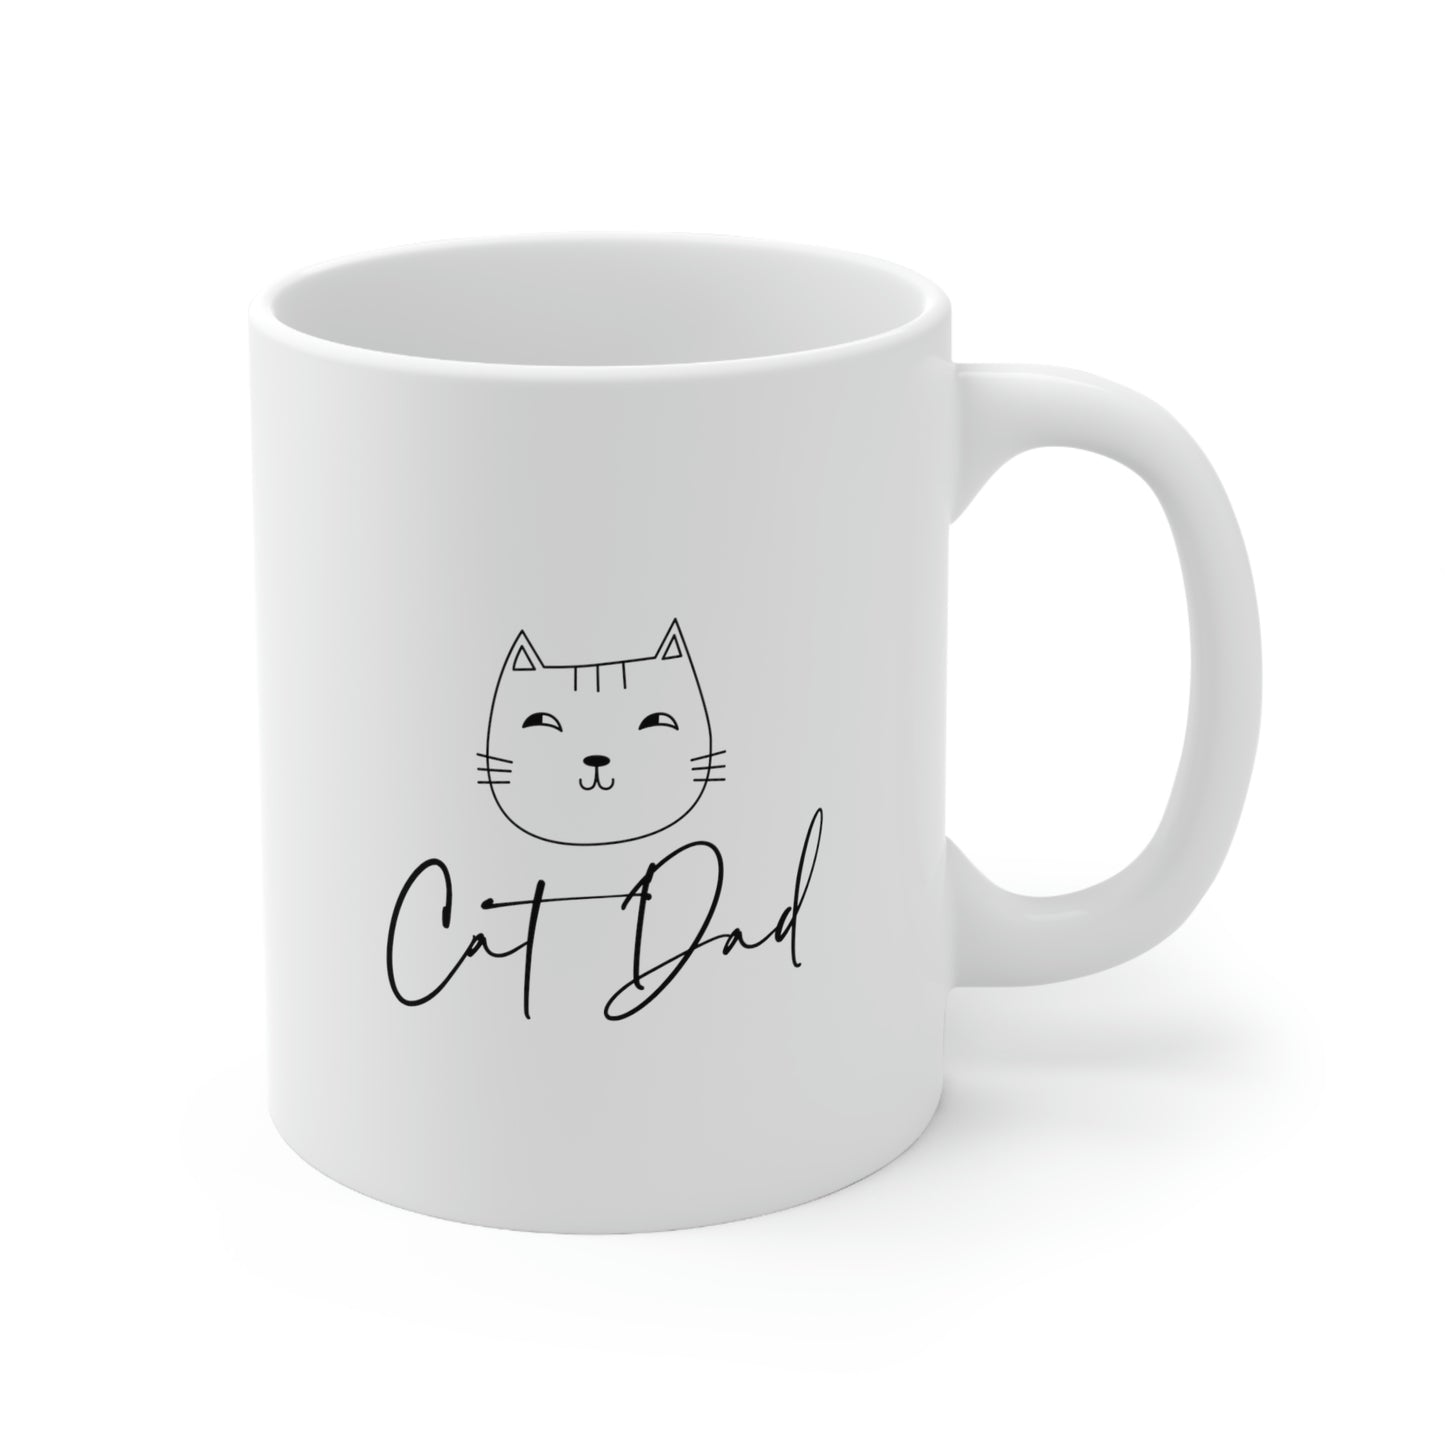 Cat Dad Cat Lover Ceramic Coffee Mug 11oz